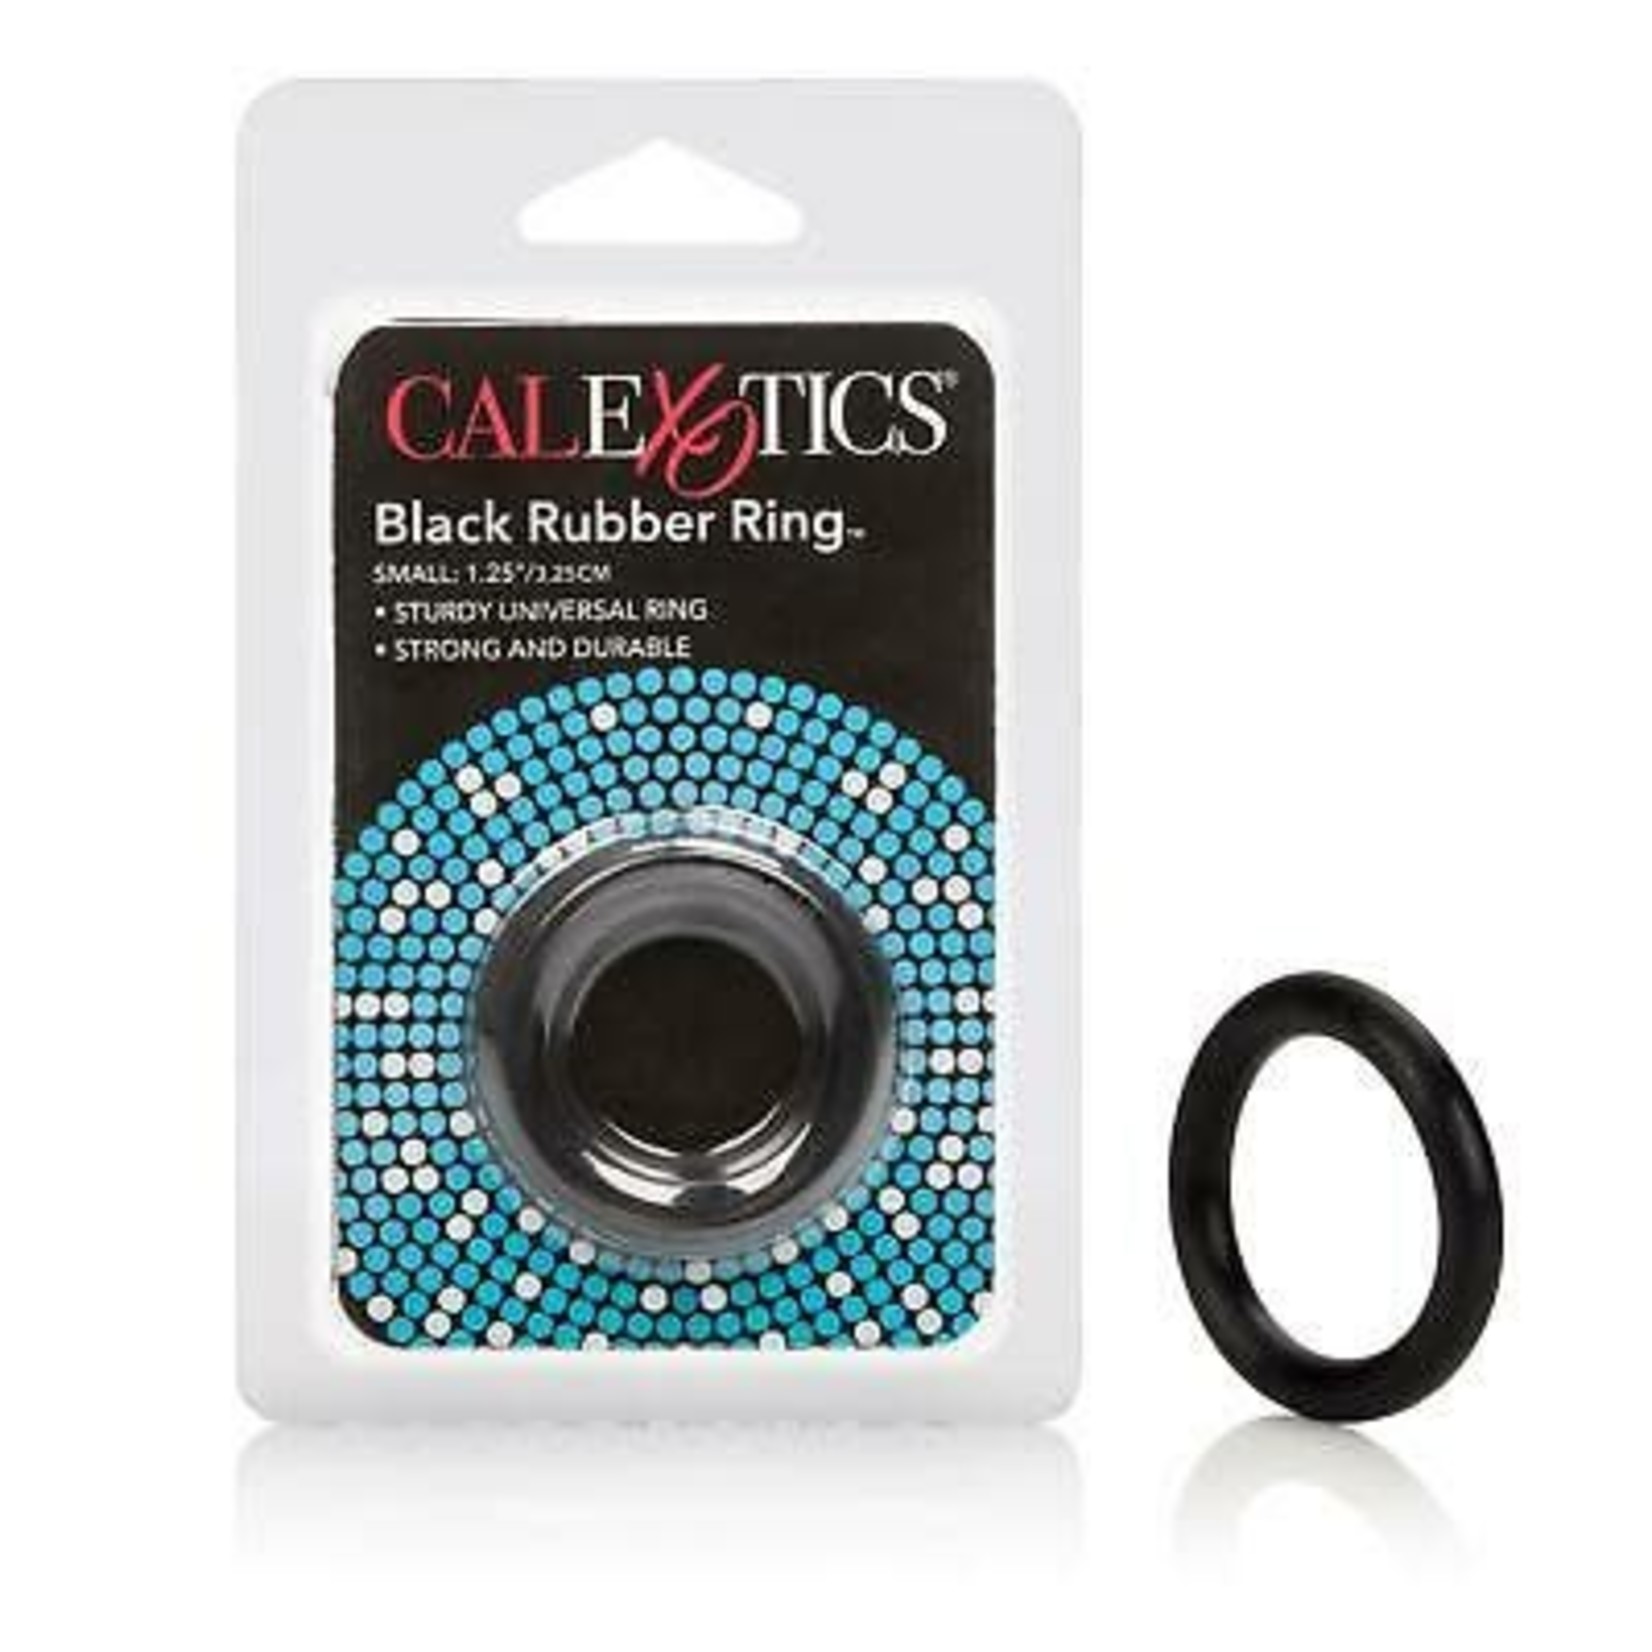 CALEXOTICS CALEXOTICS - RUBBER RING BLACK - SMALL